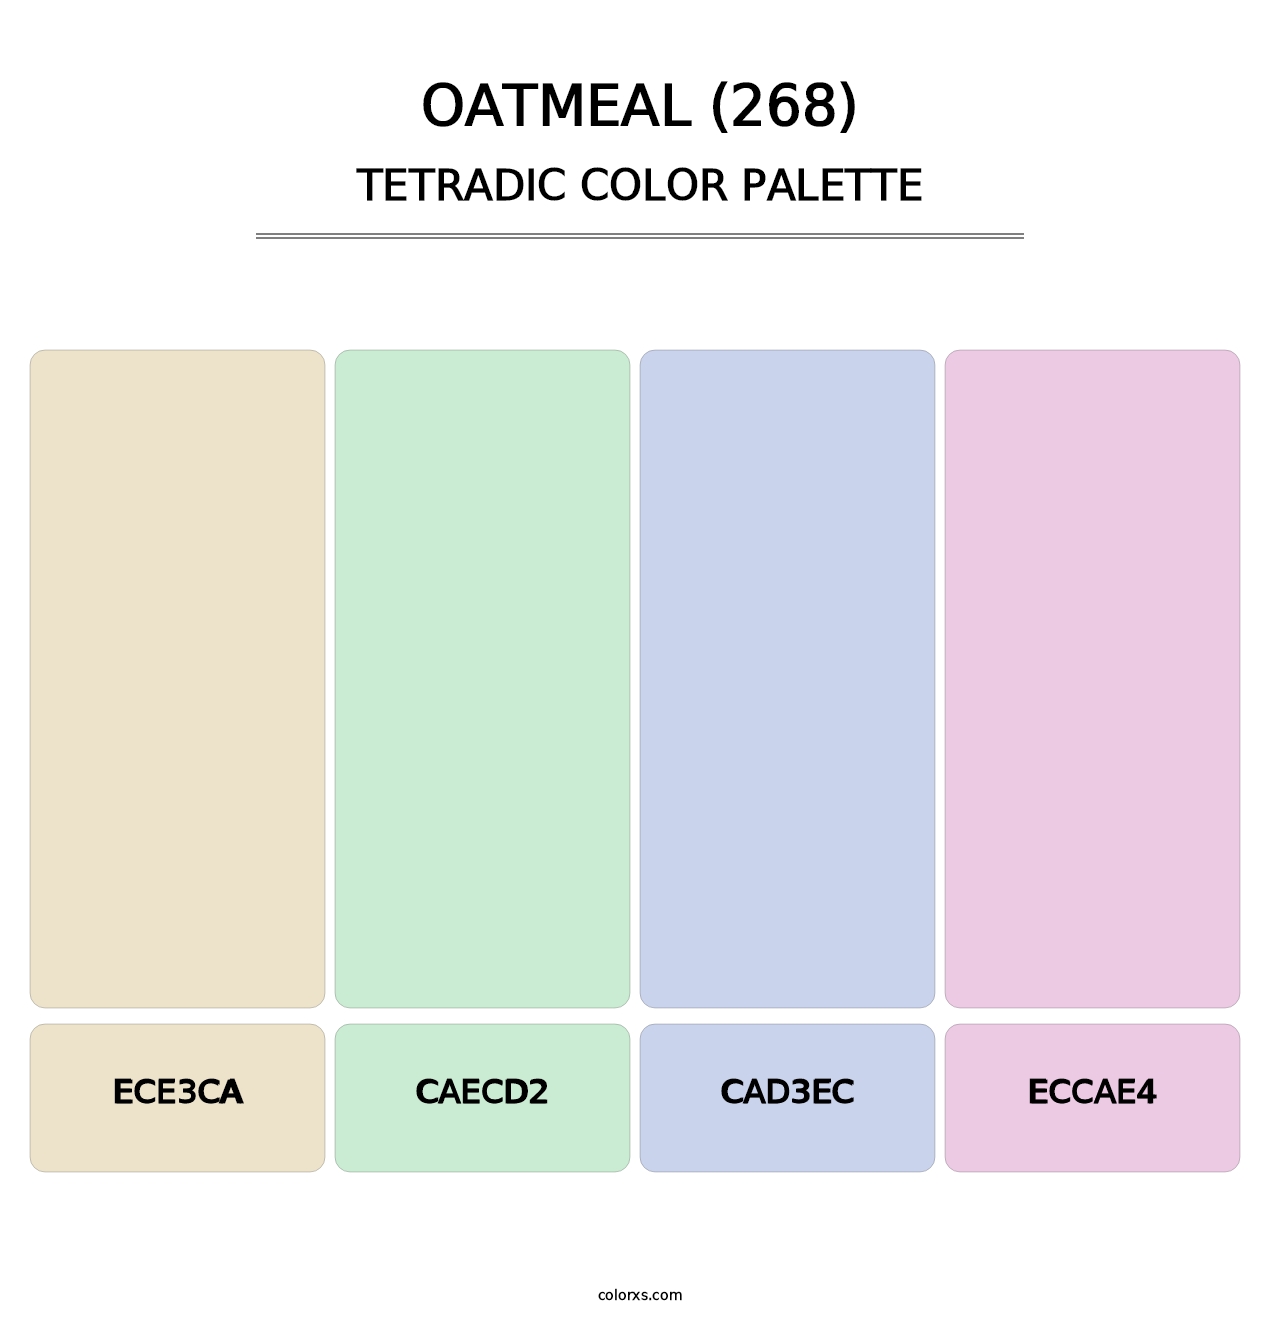 Oatmeal (268) - Tetradic Color Palette